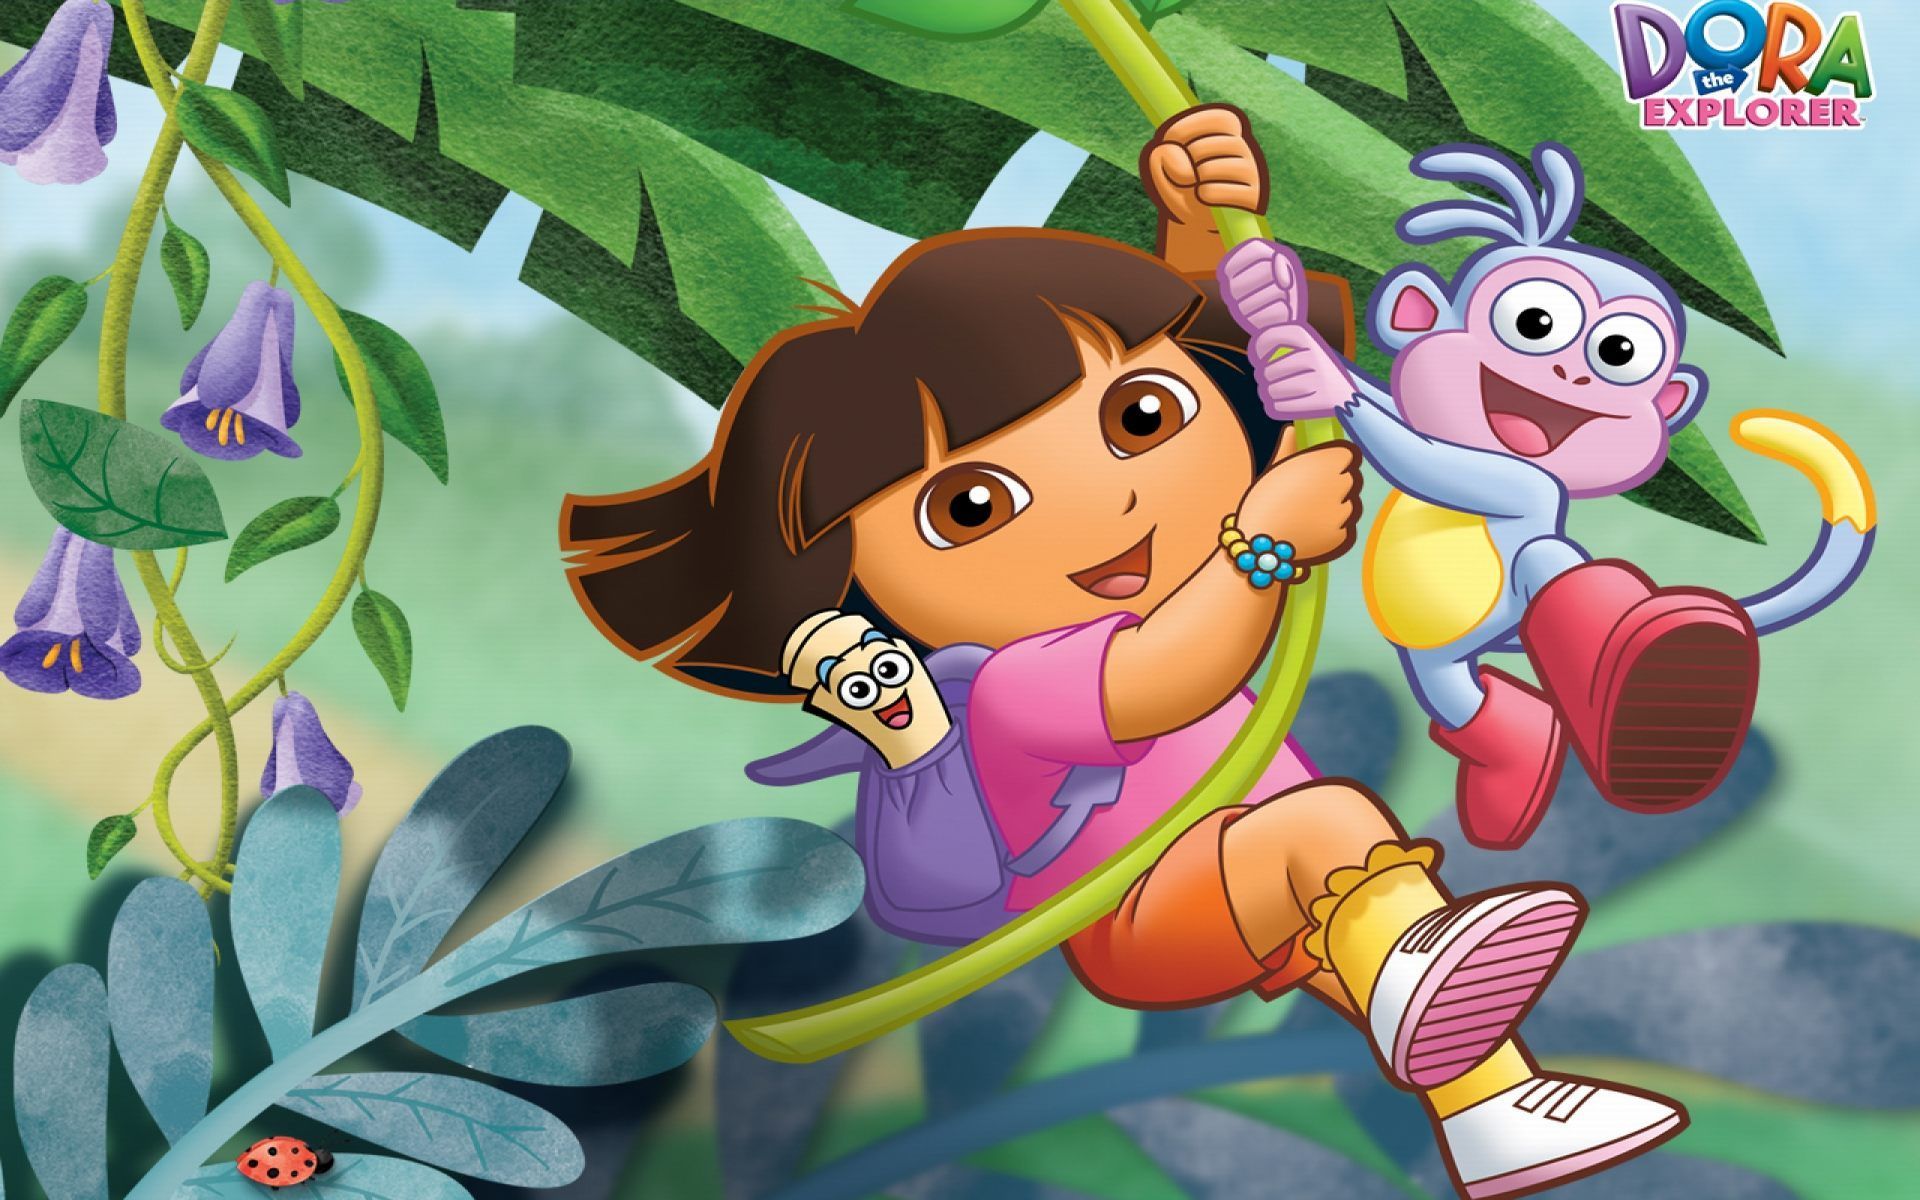 Dora the Explorer Wallpaper Free Dora the Explorer